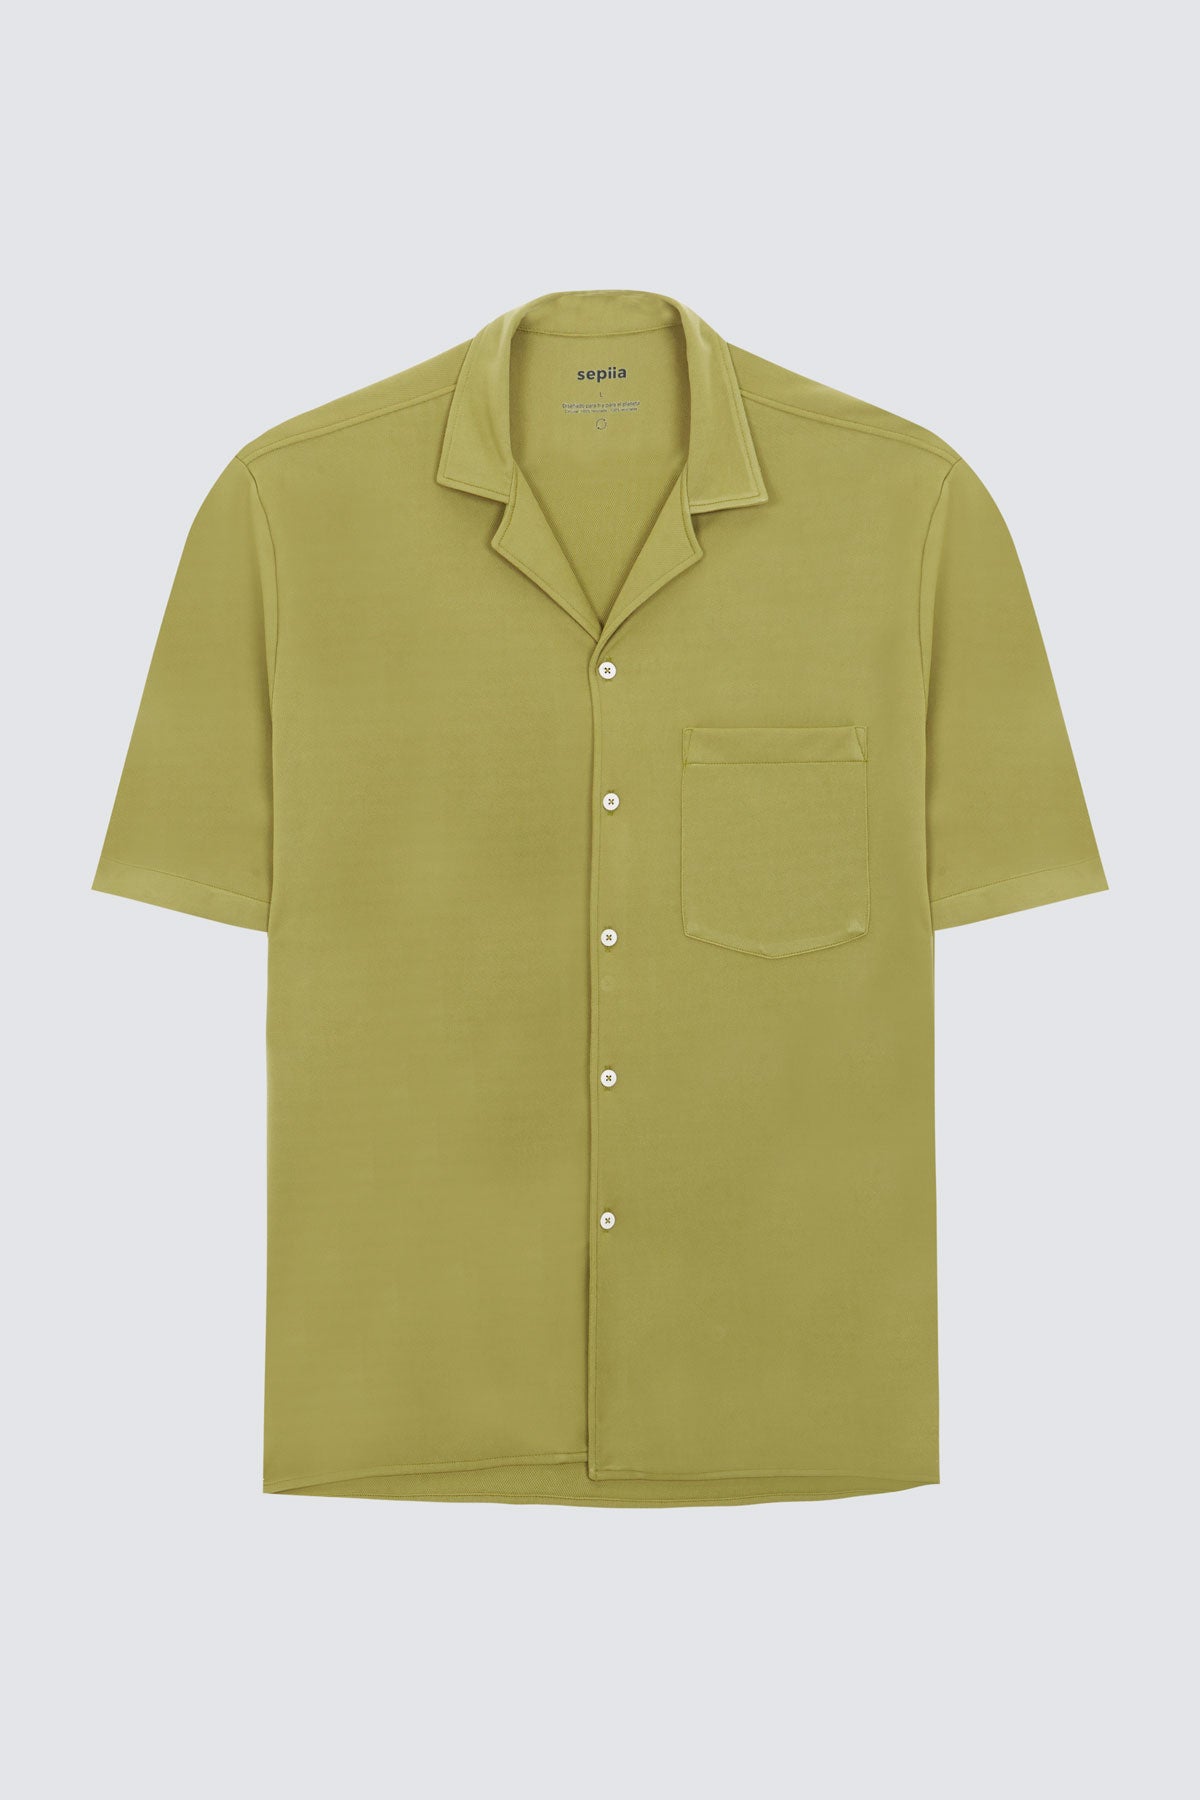 Camisa manga corta verde manzana de Sepiia, fresca y cómoda, perfecta para el verano. Foto prenda en plano